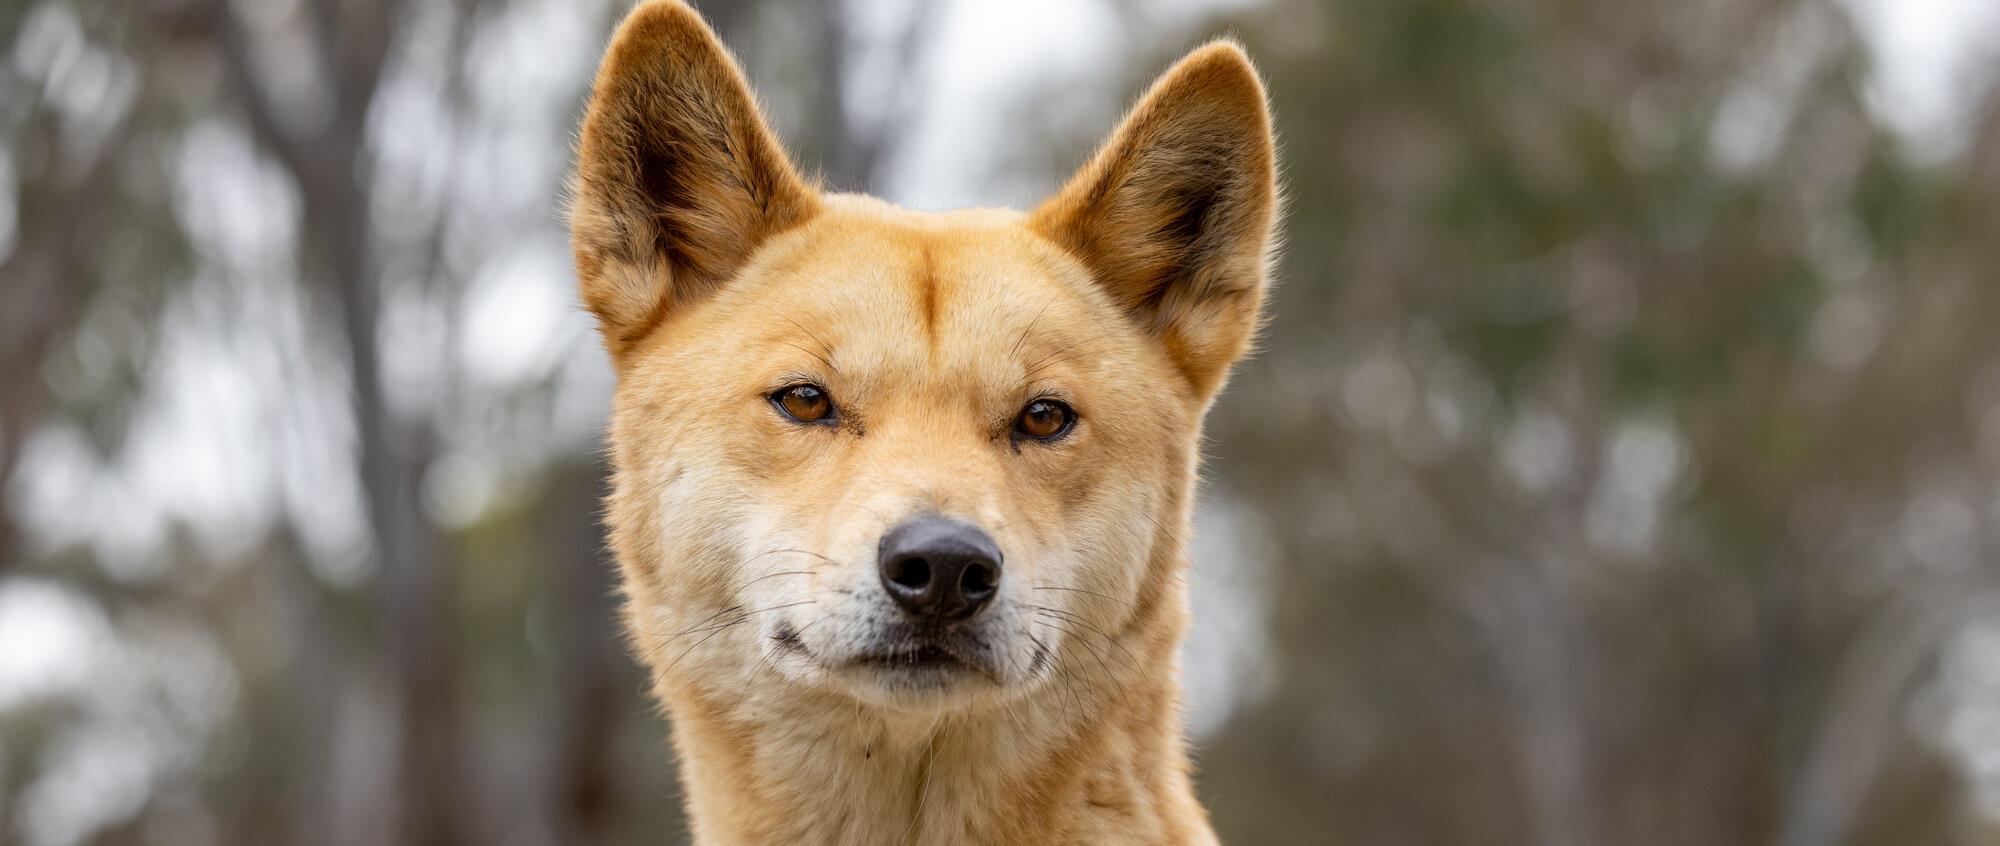 Close-up of a Dingo facing the camera.